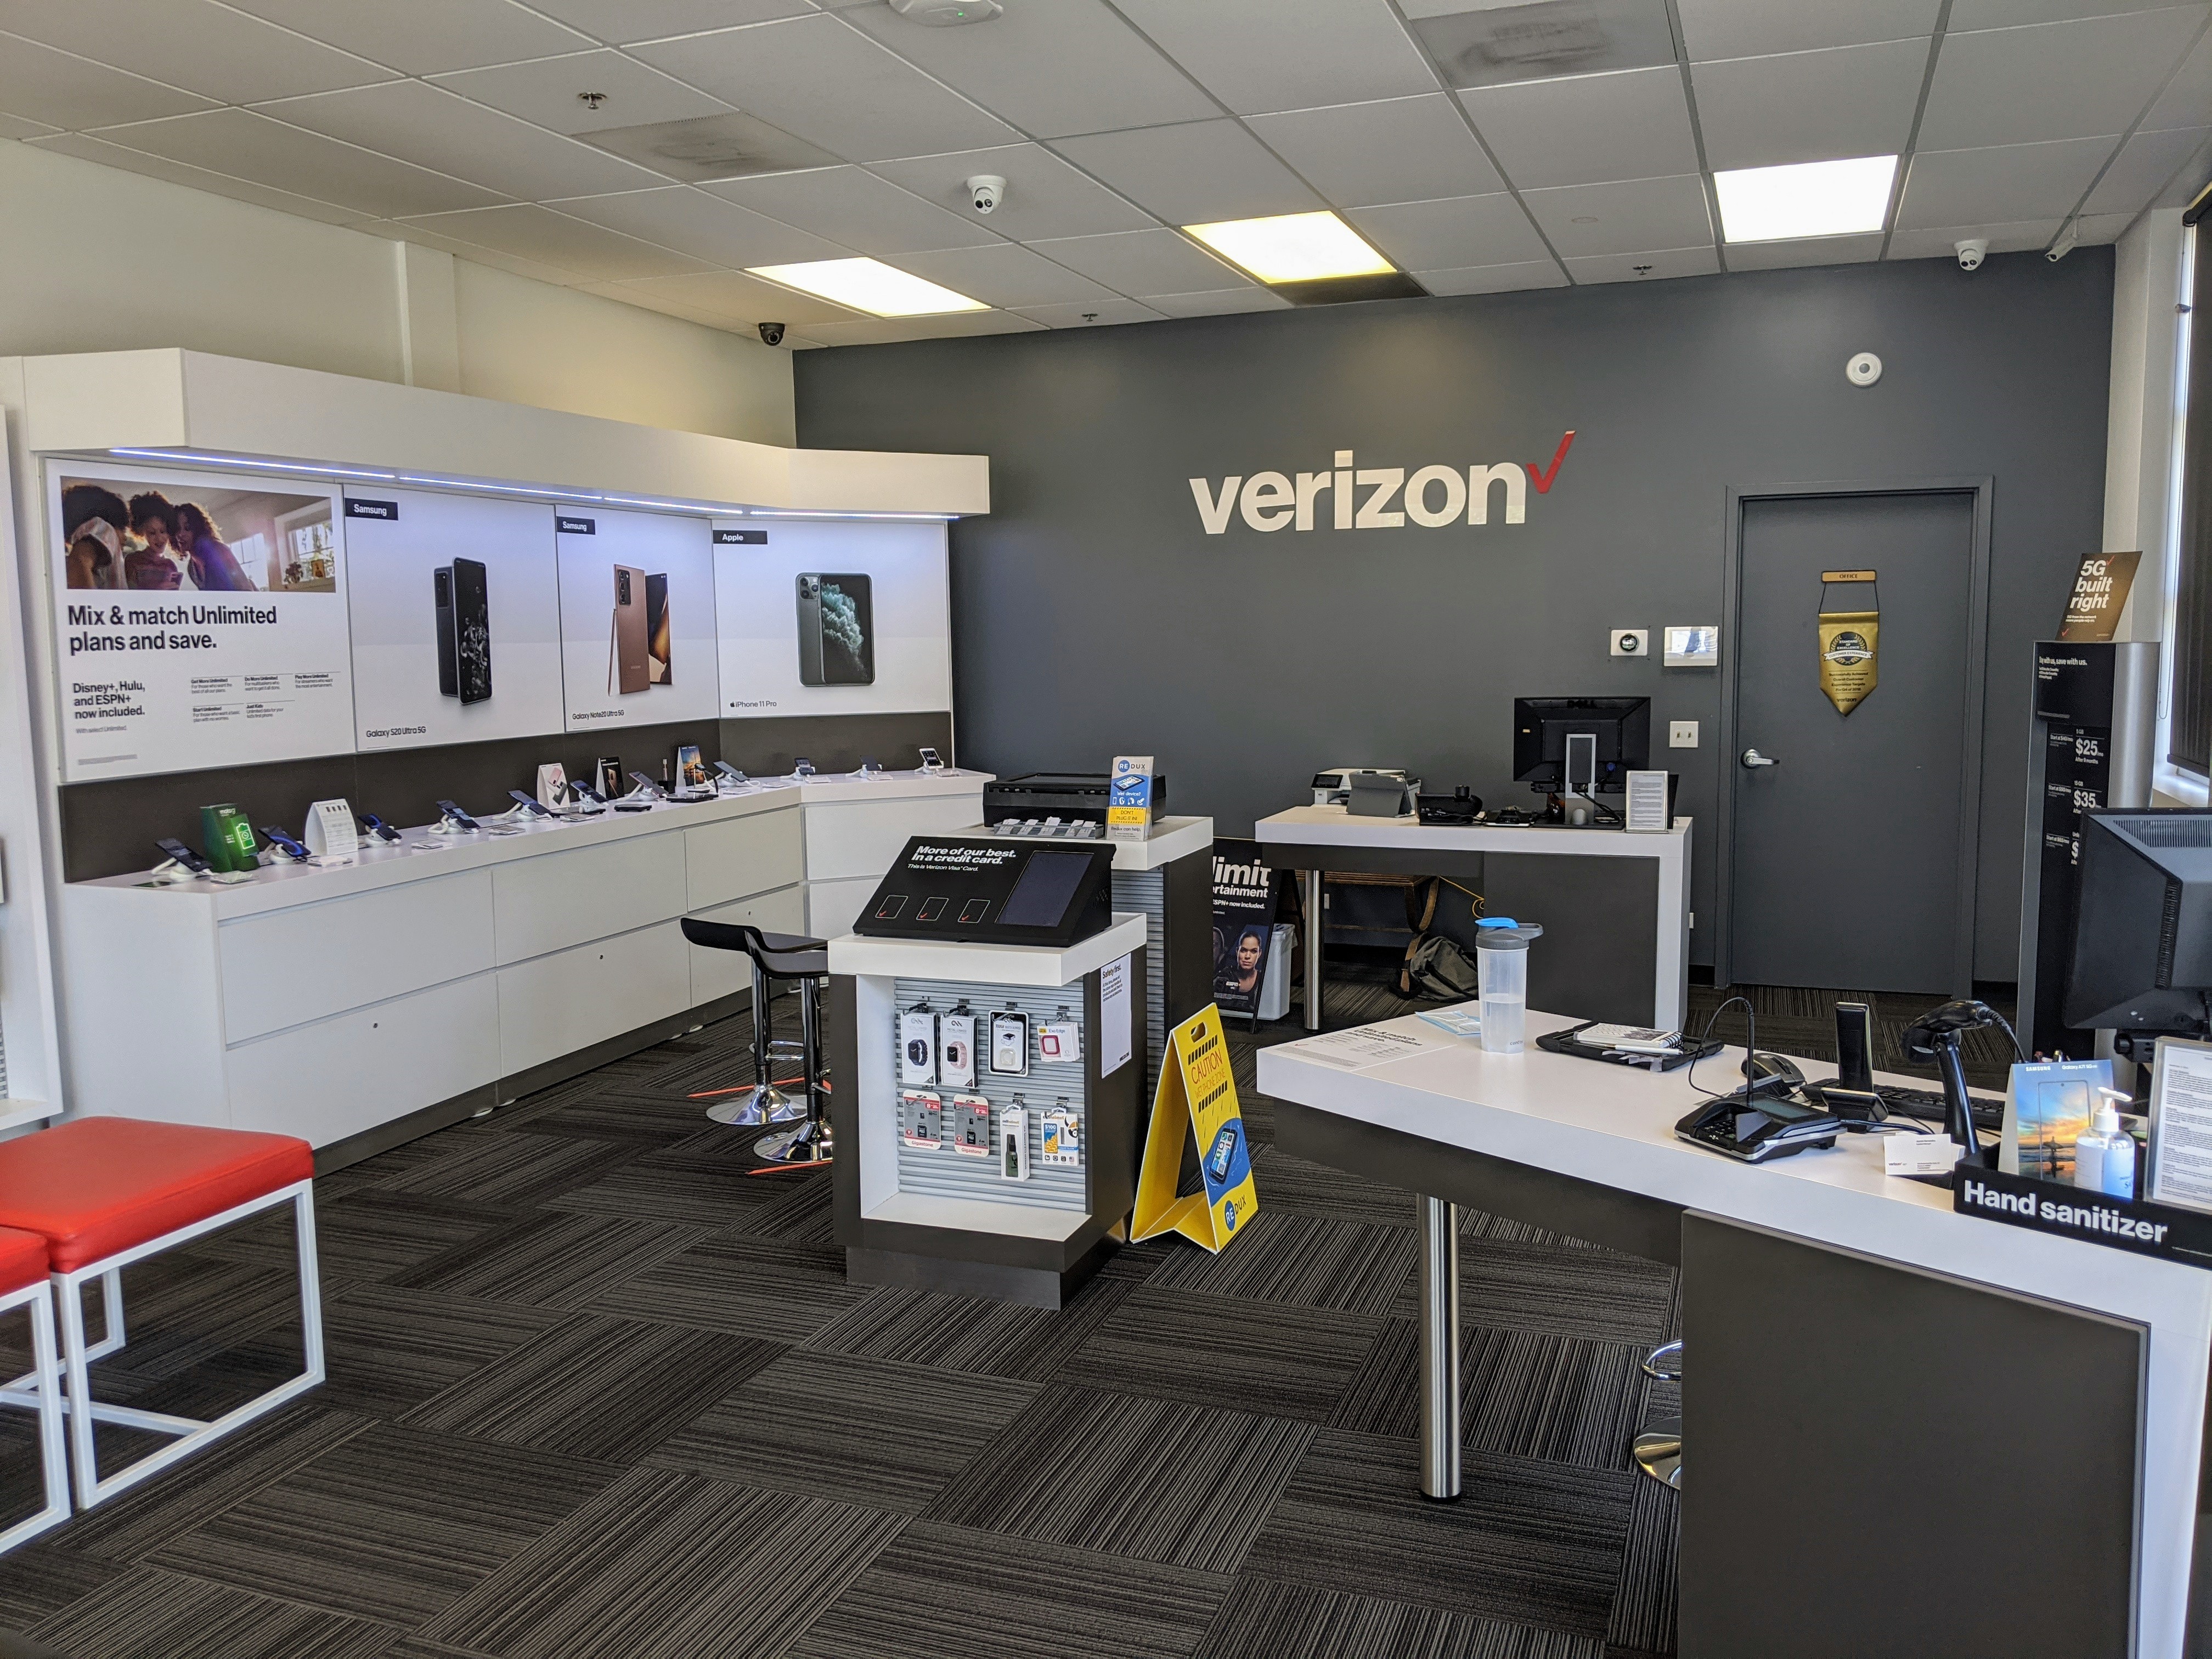 Wireless Zone® of Aurora, Verizon Authorized Retailer
1515 Butterfield Rd Ste 101
Aurora, IL